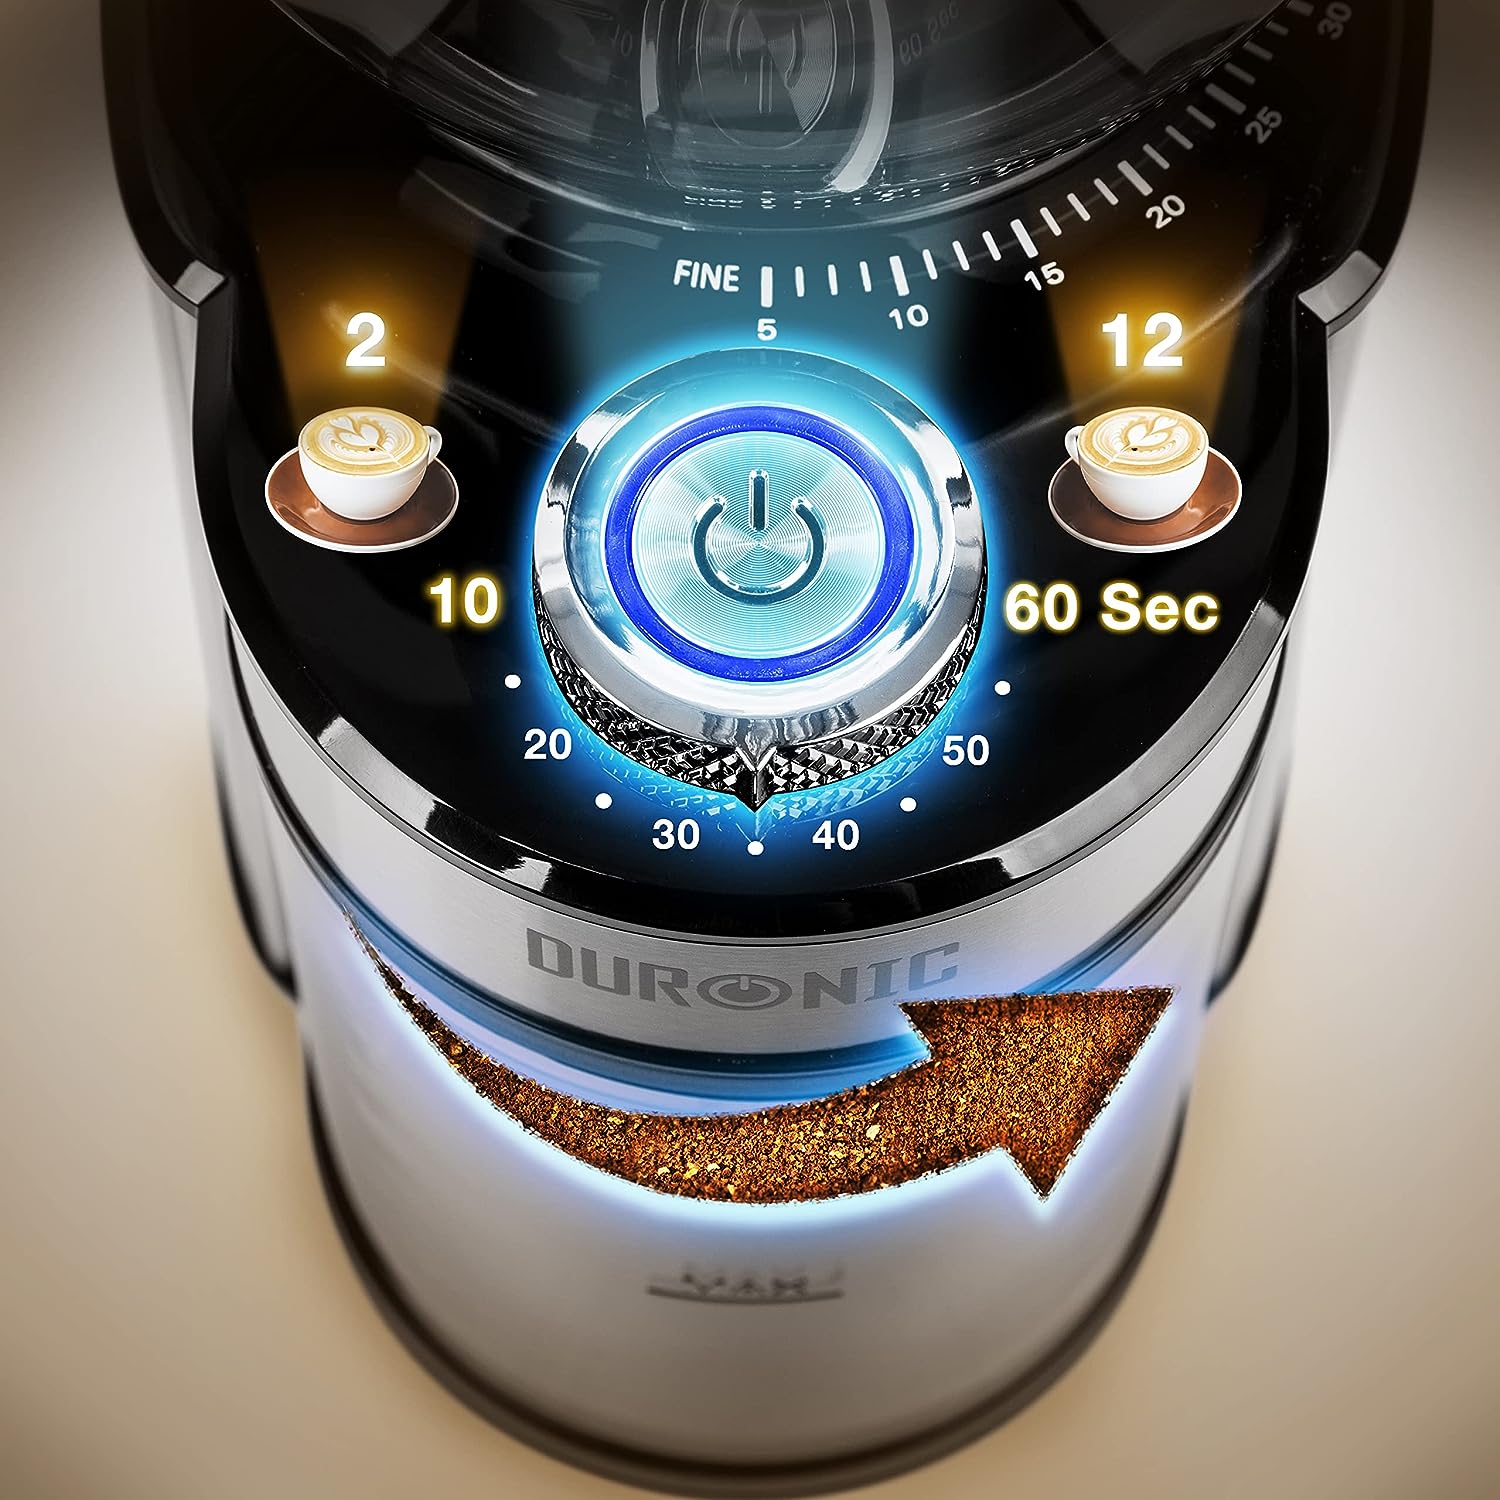 Duronic BG200 Molinillo de café eléctrico | Potencia de 200 W y 2 recipientes | 7 niveles de molido | Taza de 200 g de capacidad y recipiente de 120 g de capacidad | Cuchara incluida